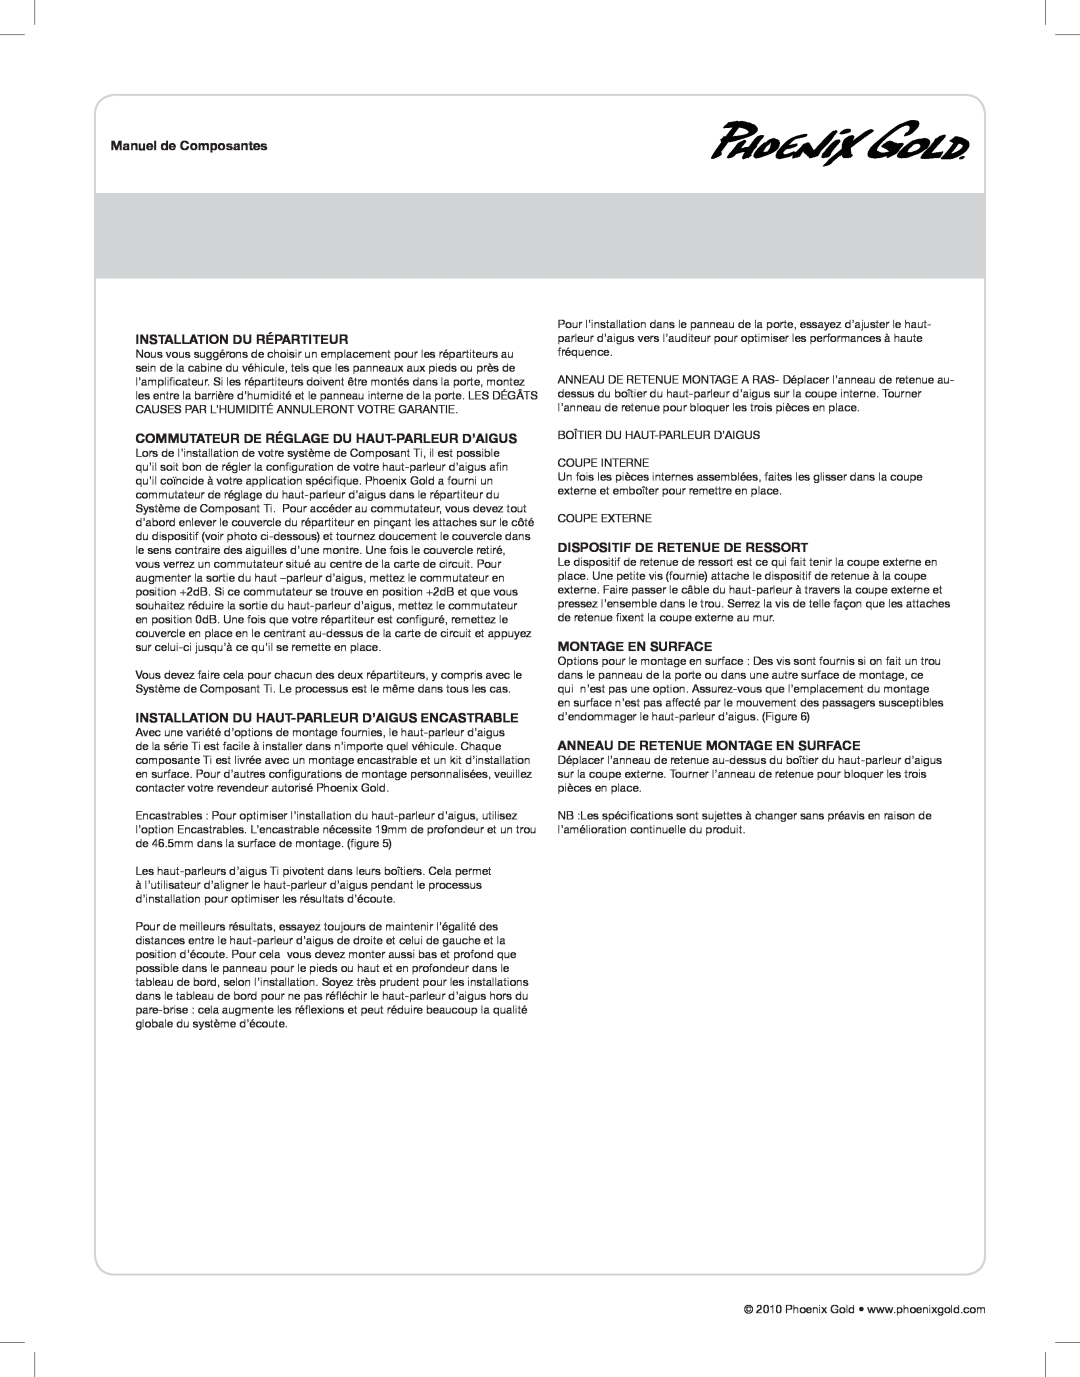 Phoenix Gold TI6CS manual Manuel de Composantes, Installation Du Répartiteur, Commutateur De Réglage Du Haut-Parleurd’Aigus 